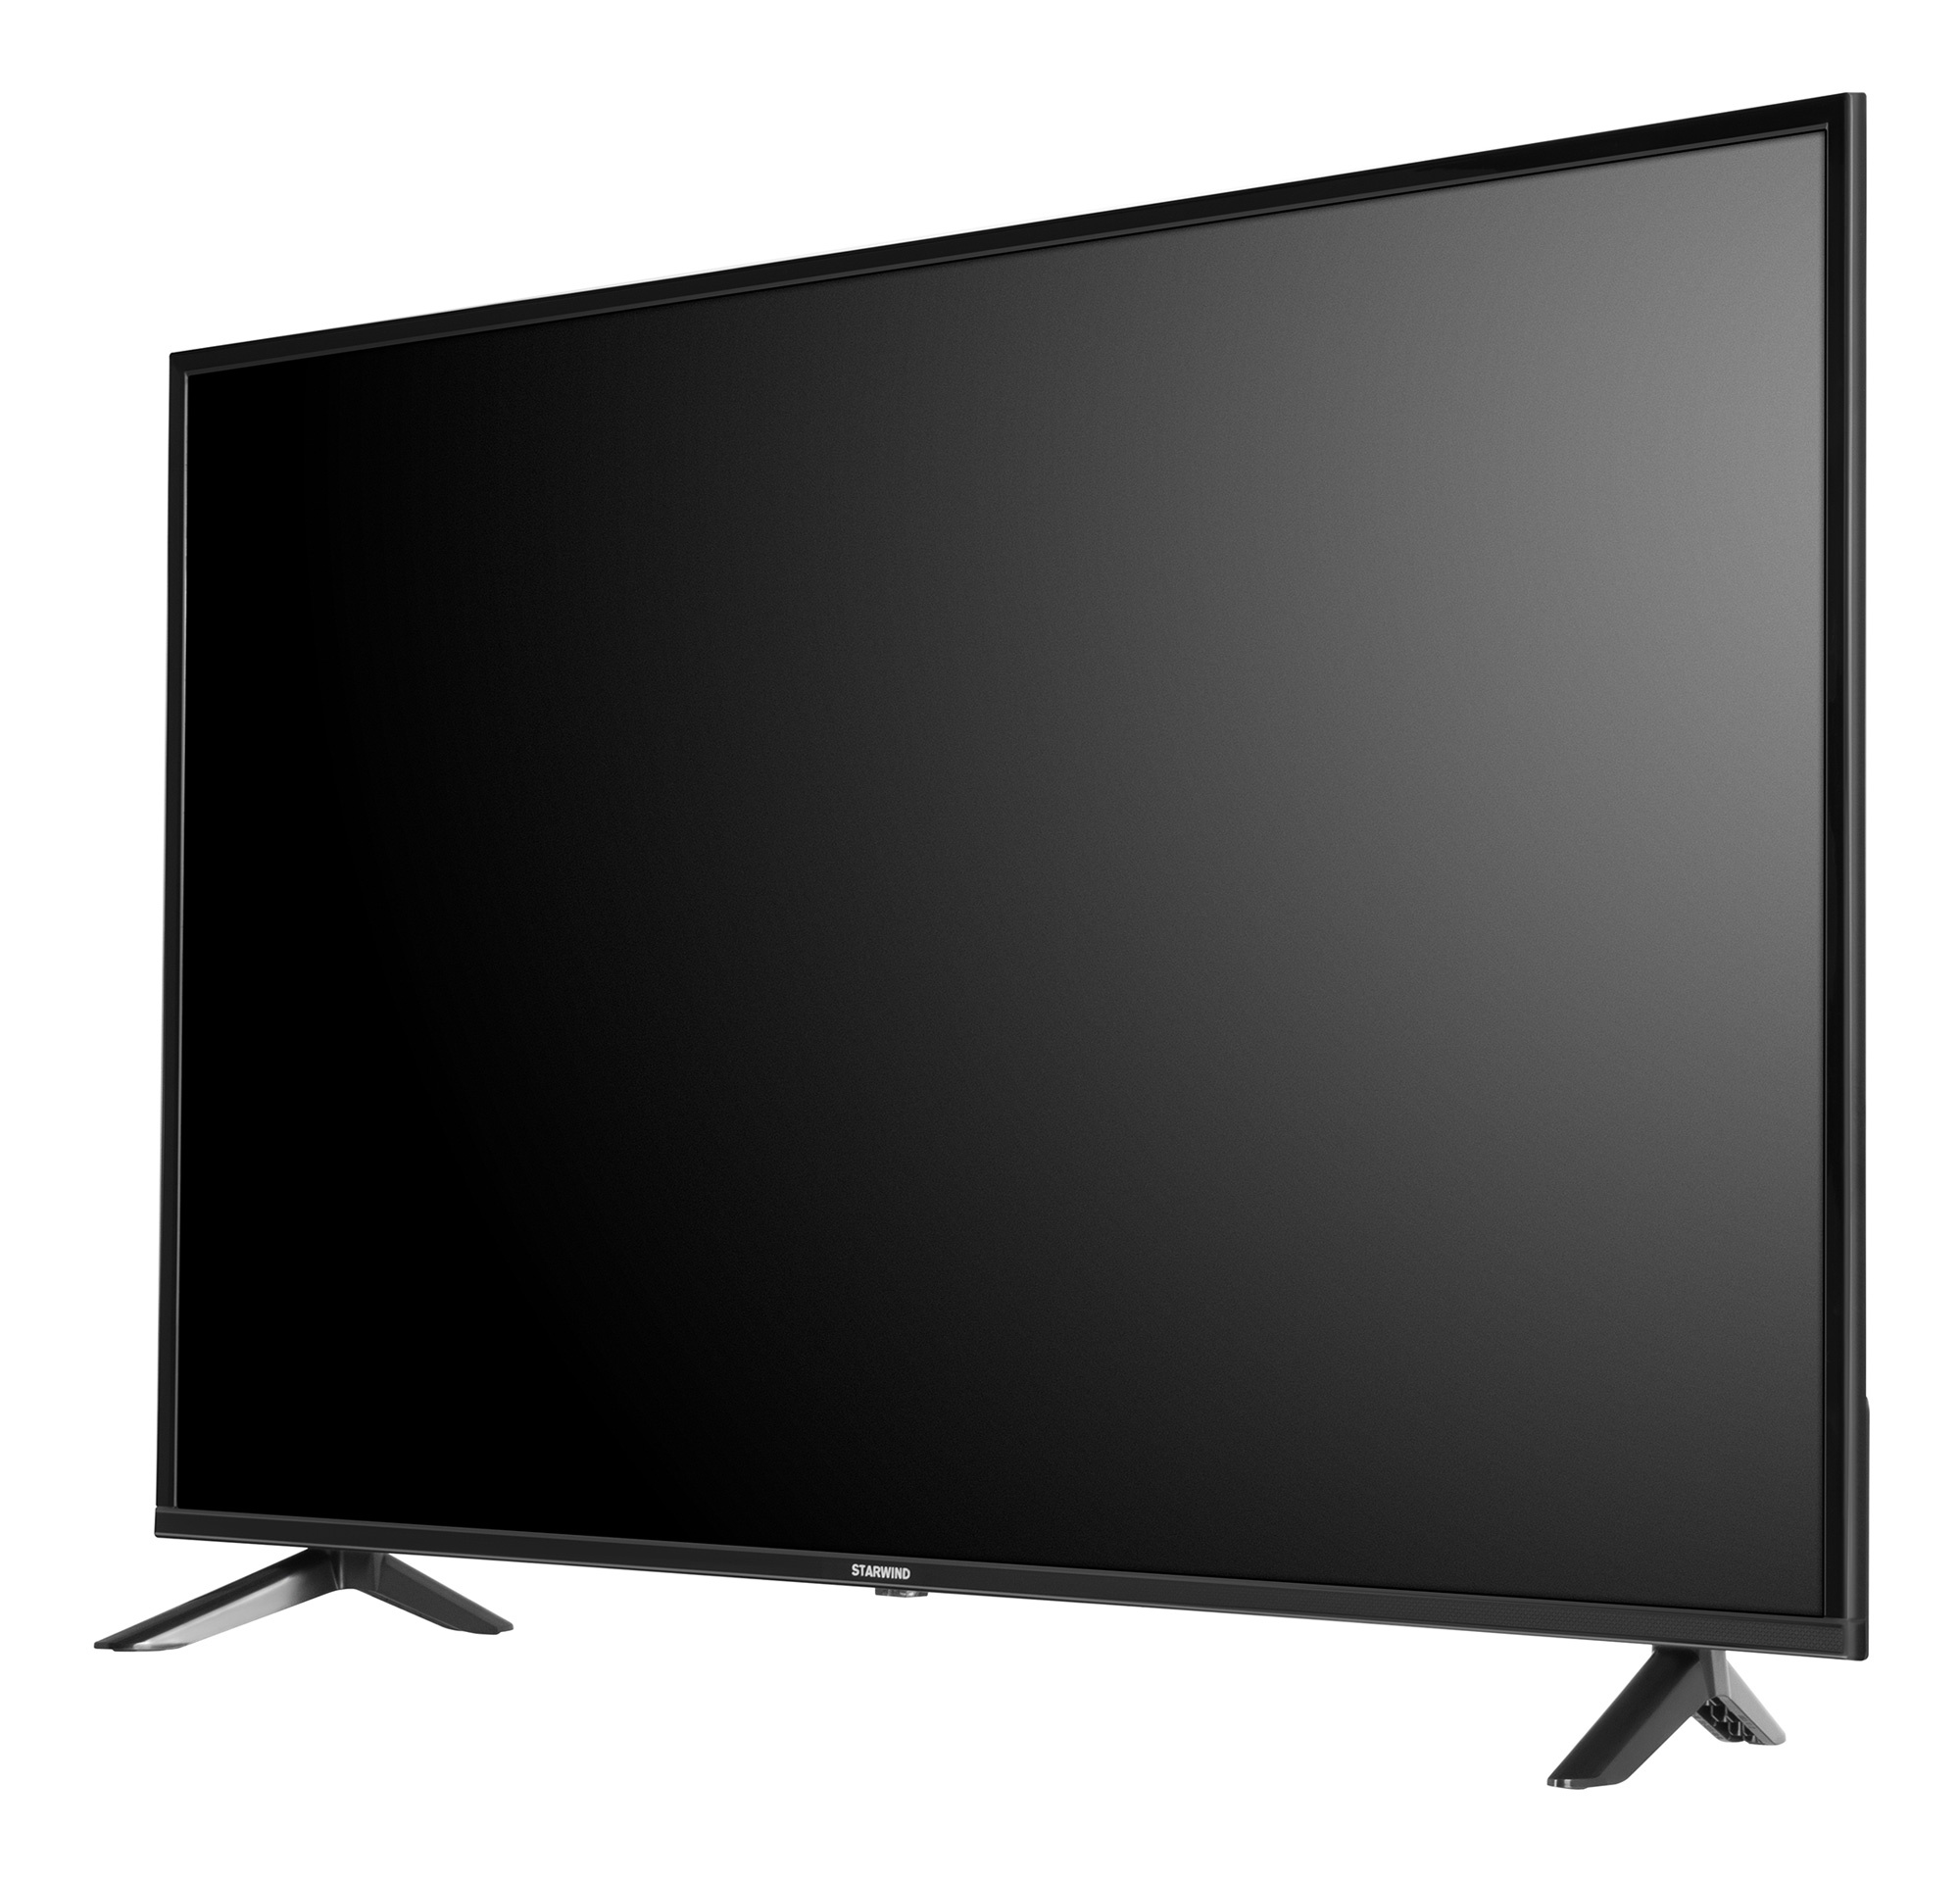 Телевизор Starwind Яндекс.ТВ SW-LED55UB401, 55", LED, 4K Ultra HD, черный от магазина Старвинд